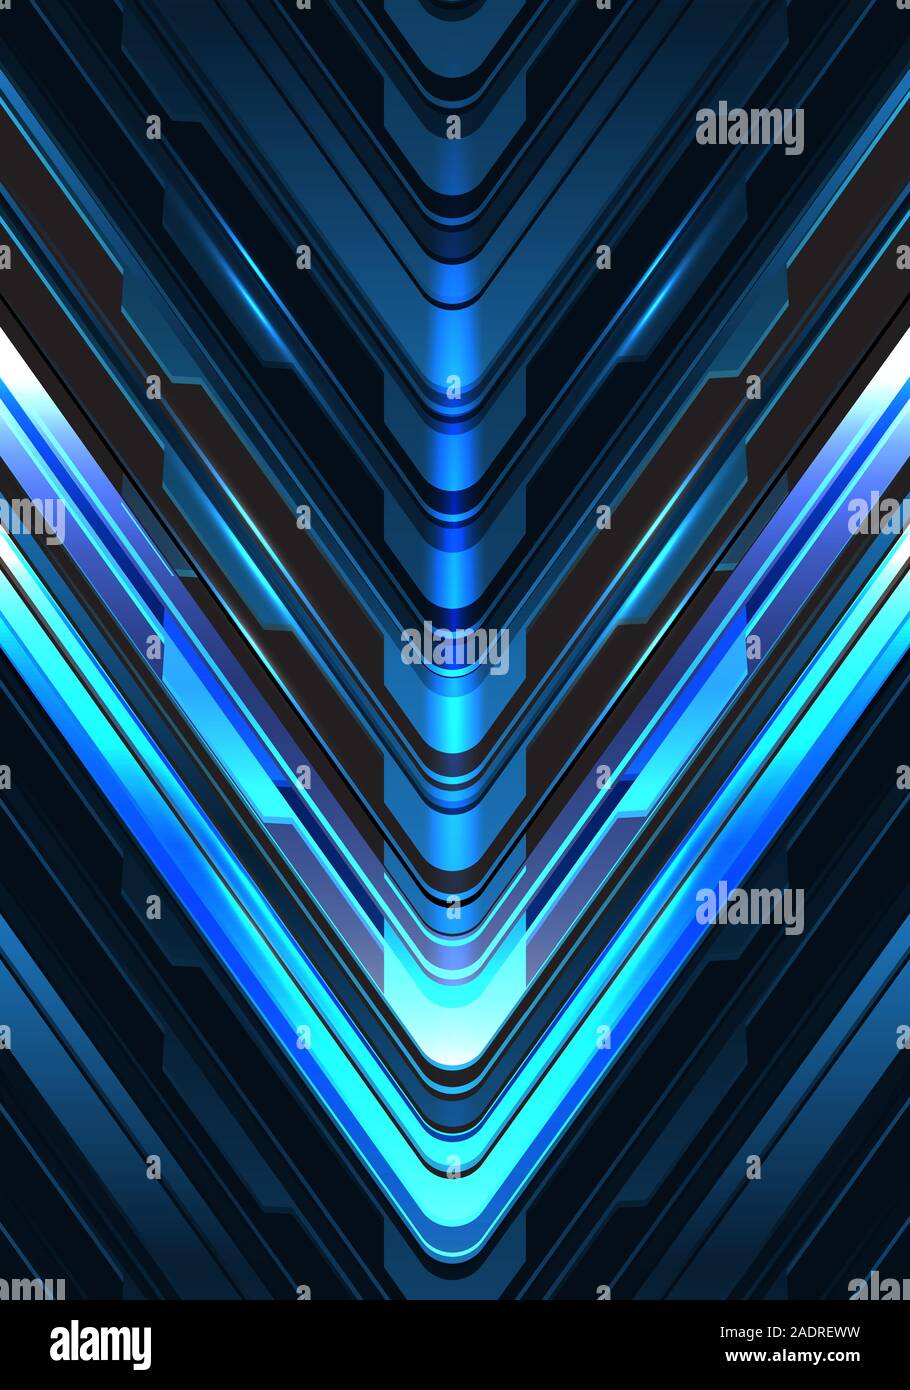 Abstrakt Blau schwarzen Pfeil cyber metallic Richtung Licht Design moderne futuristischen Technologie Hintergrund Vector Illustration. Stock Vektor